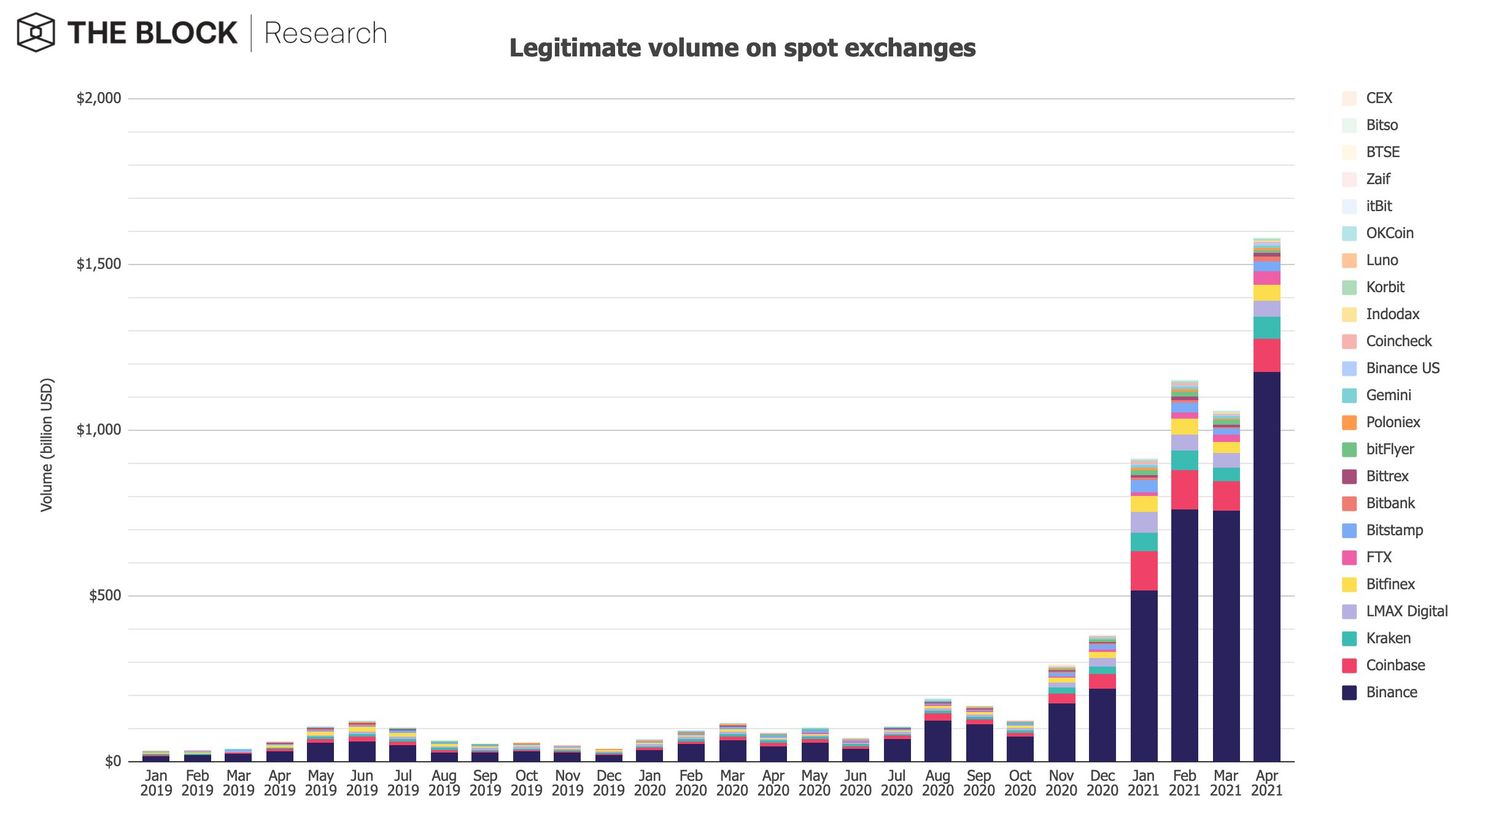 Bitcoin (BTC) handel floreert in april: $1.580 miljard aan volume